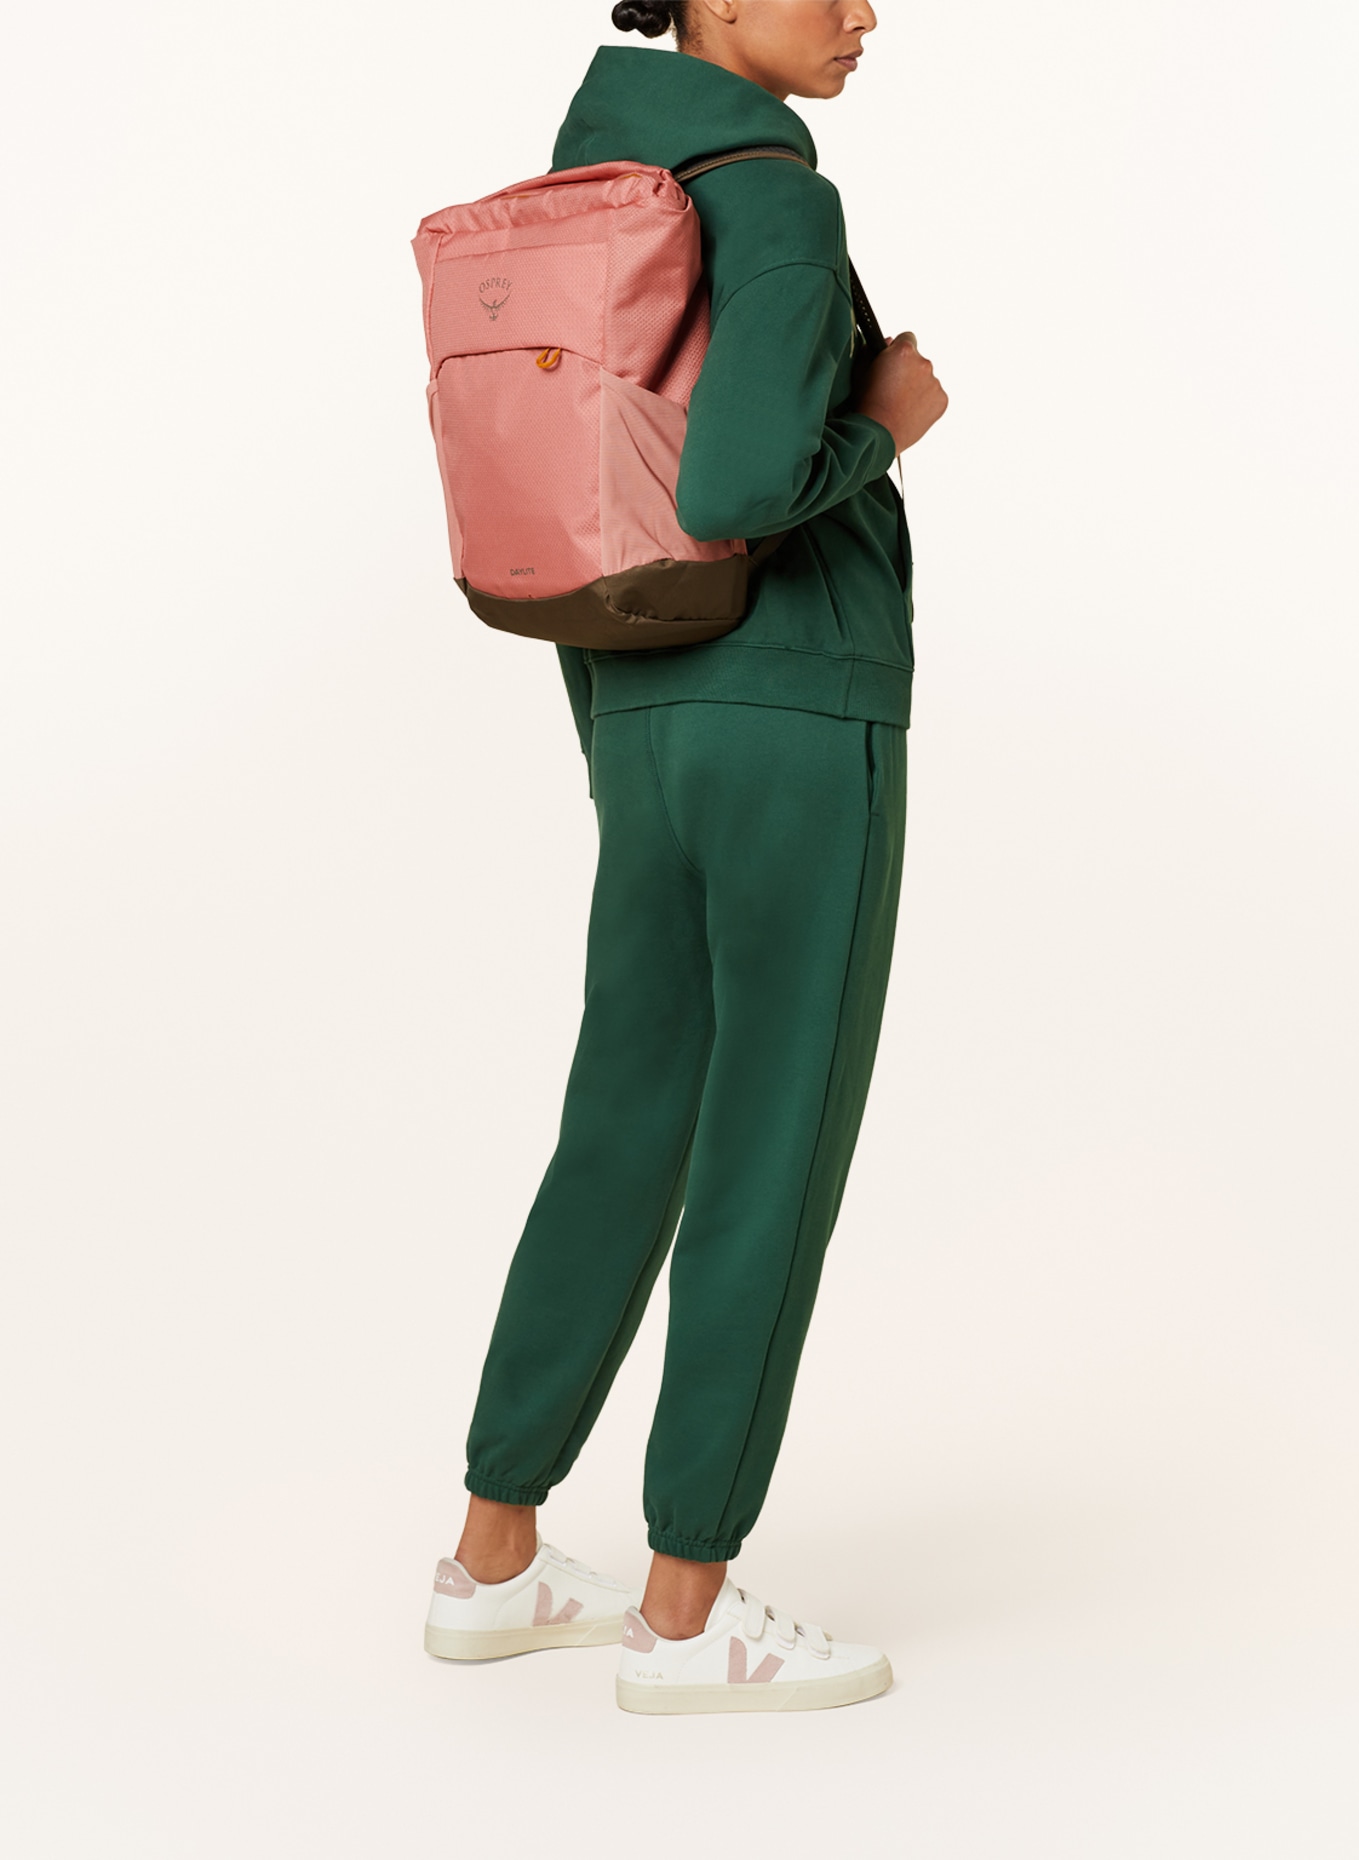 OSPREY Backpack DAYLITE 20 l, Color: PINK/ KHAKI (Image 5)